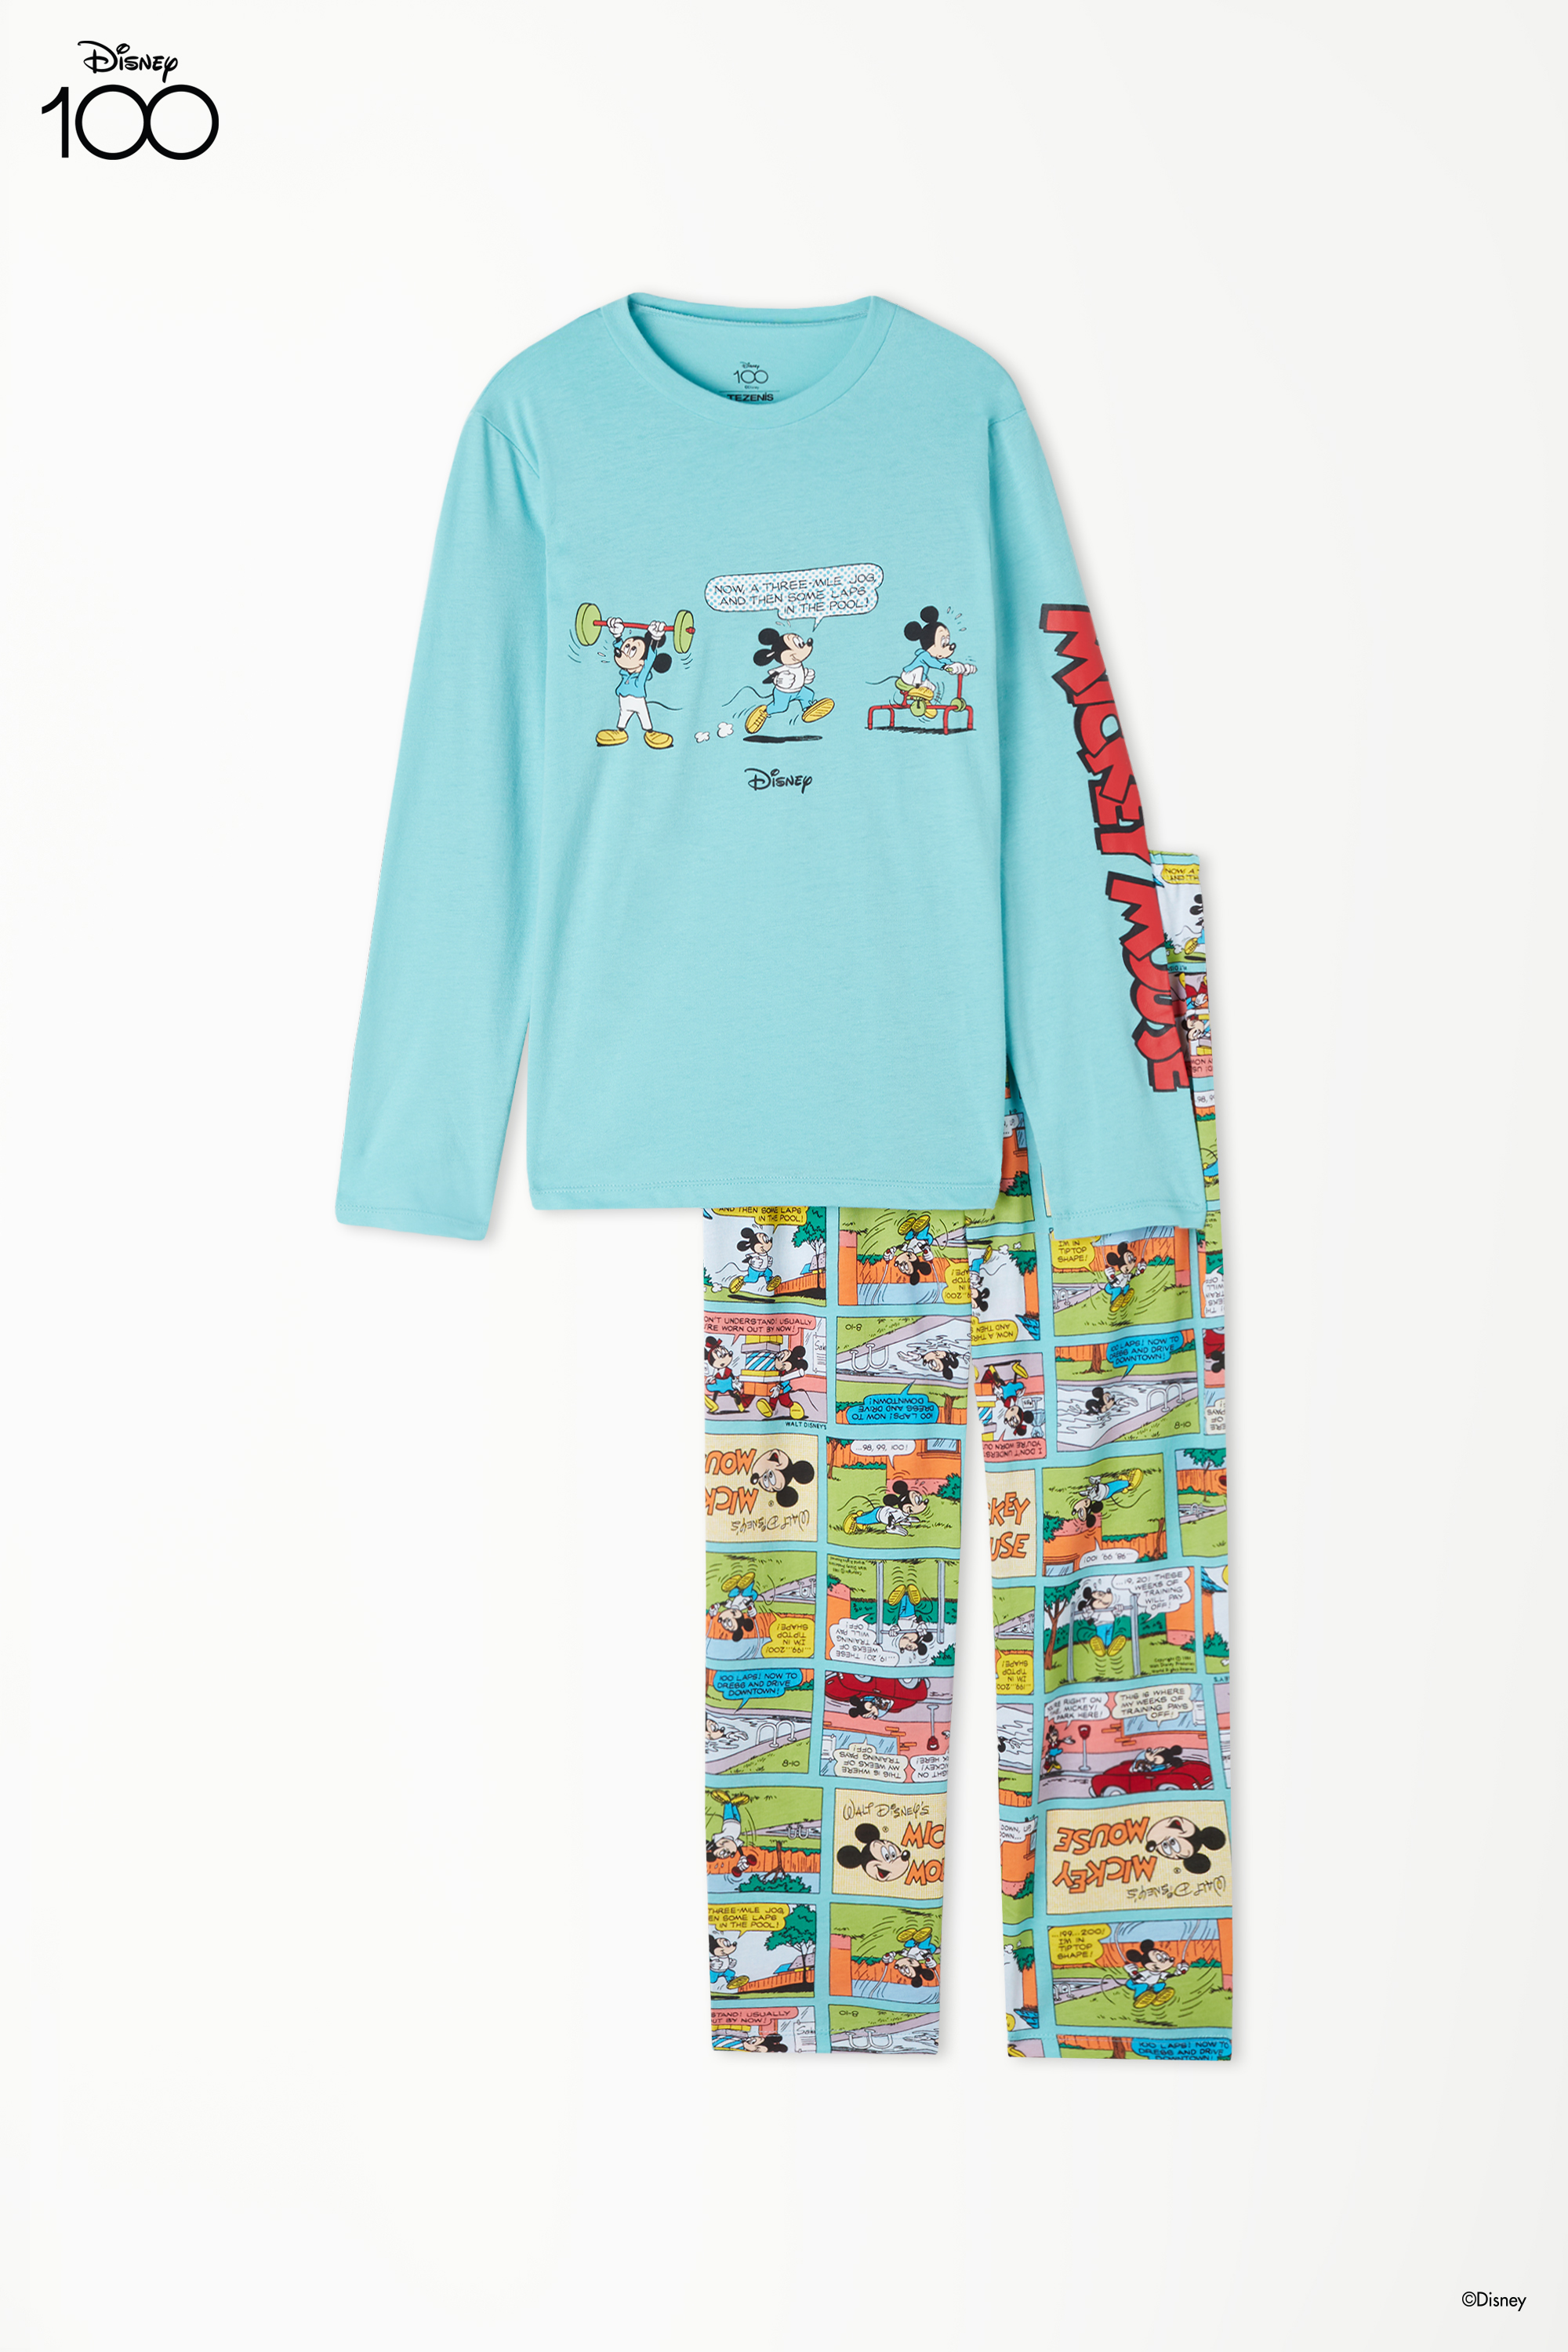 Boys’ Long Cotton Pyjamas with Disney 100 Print